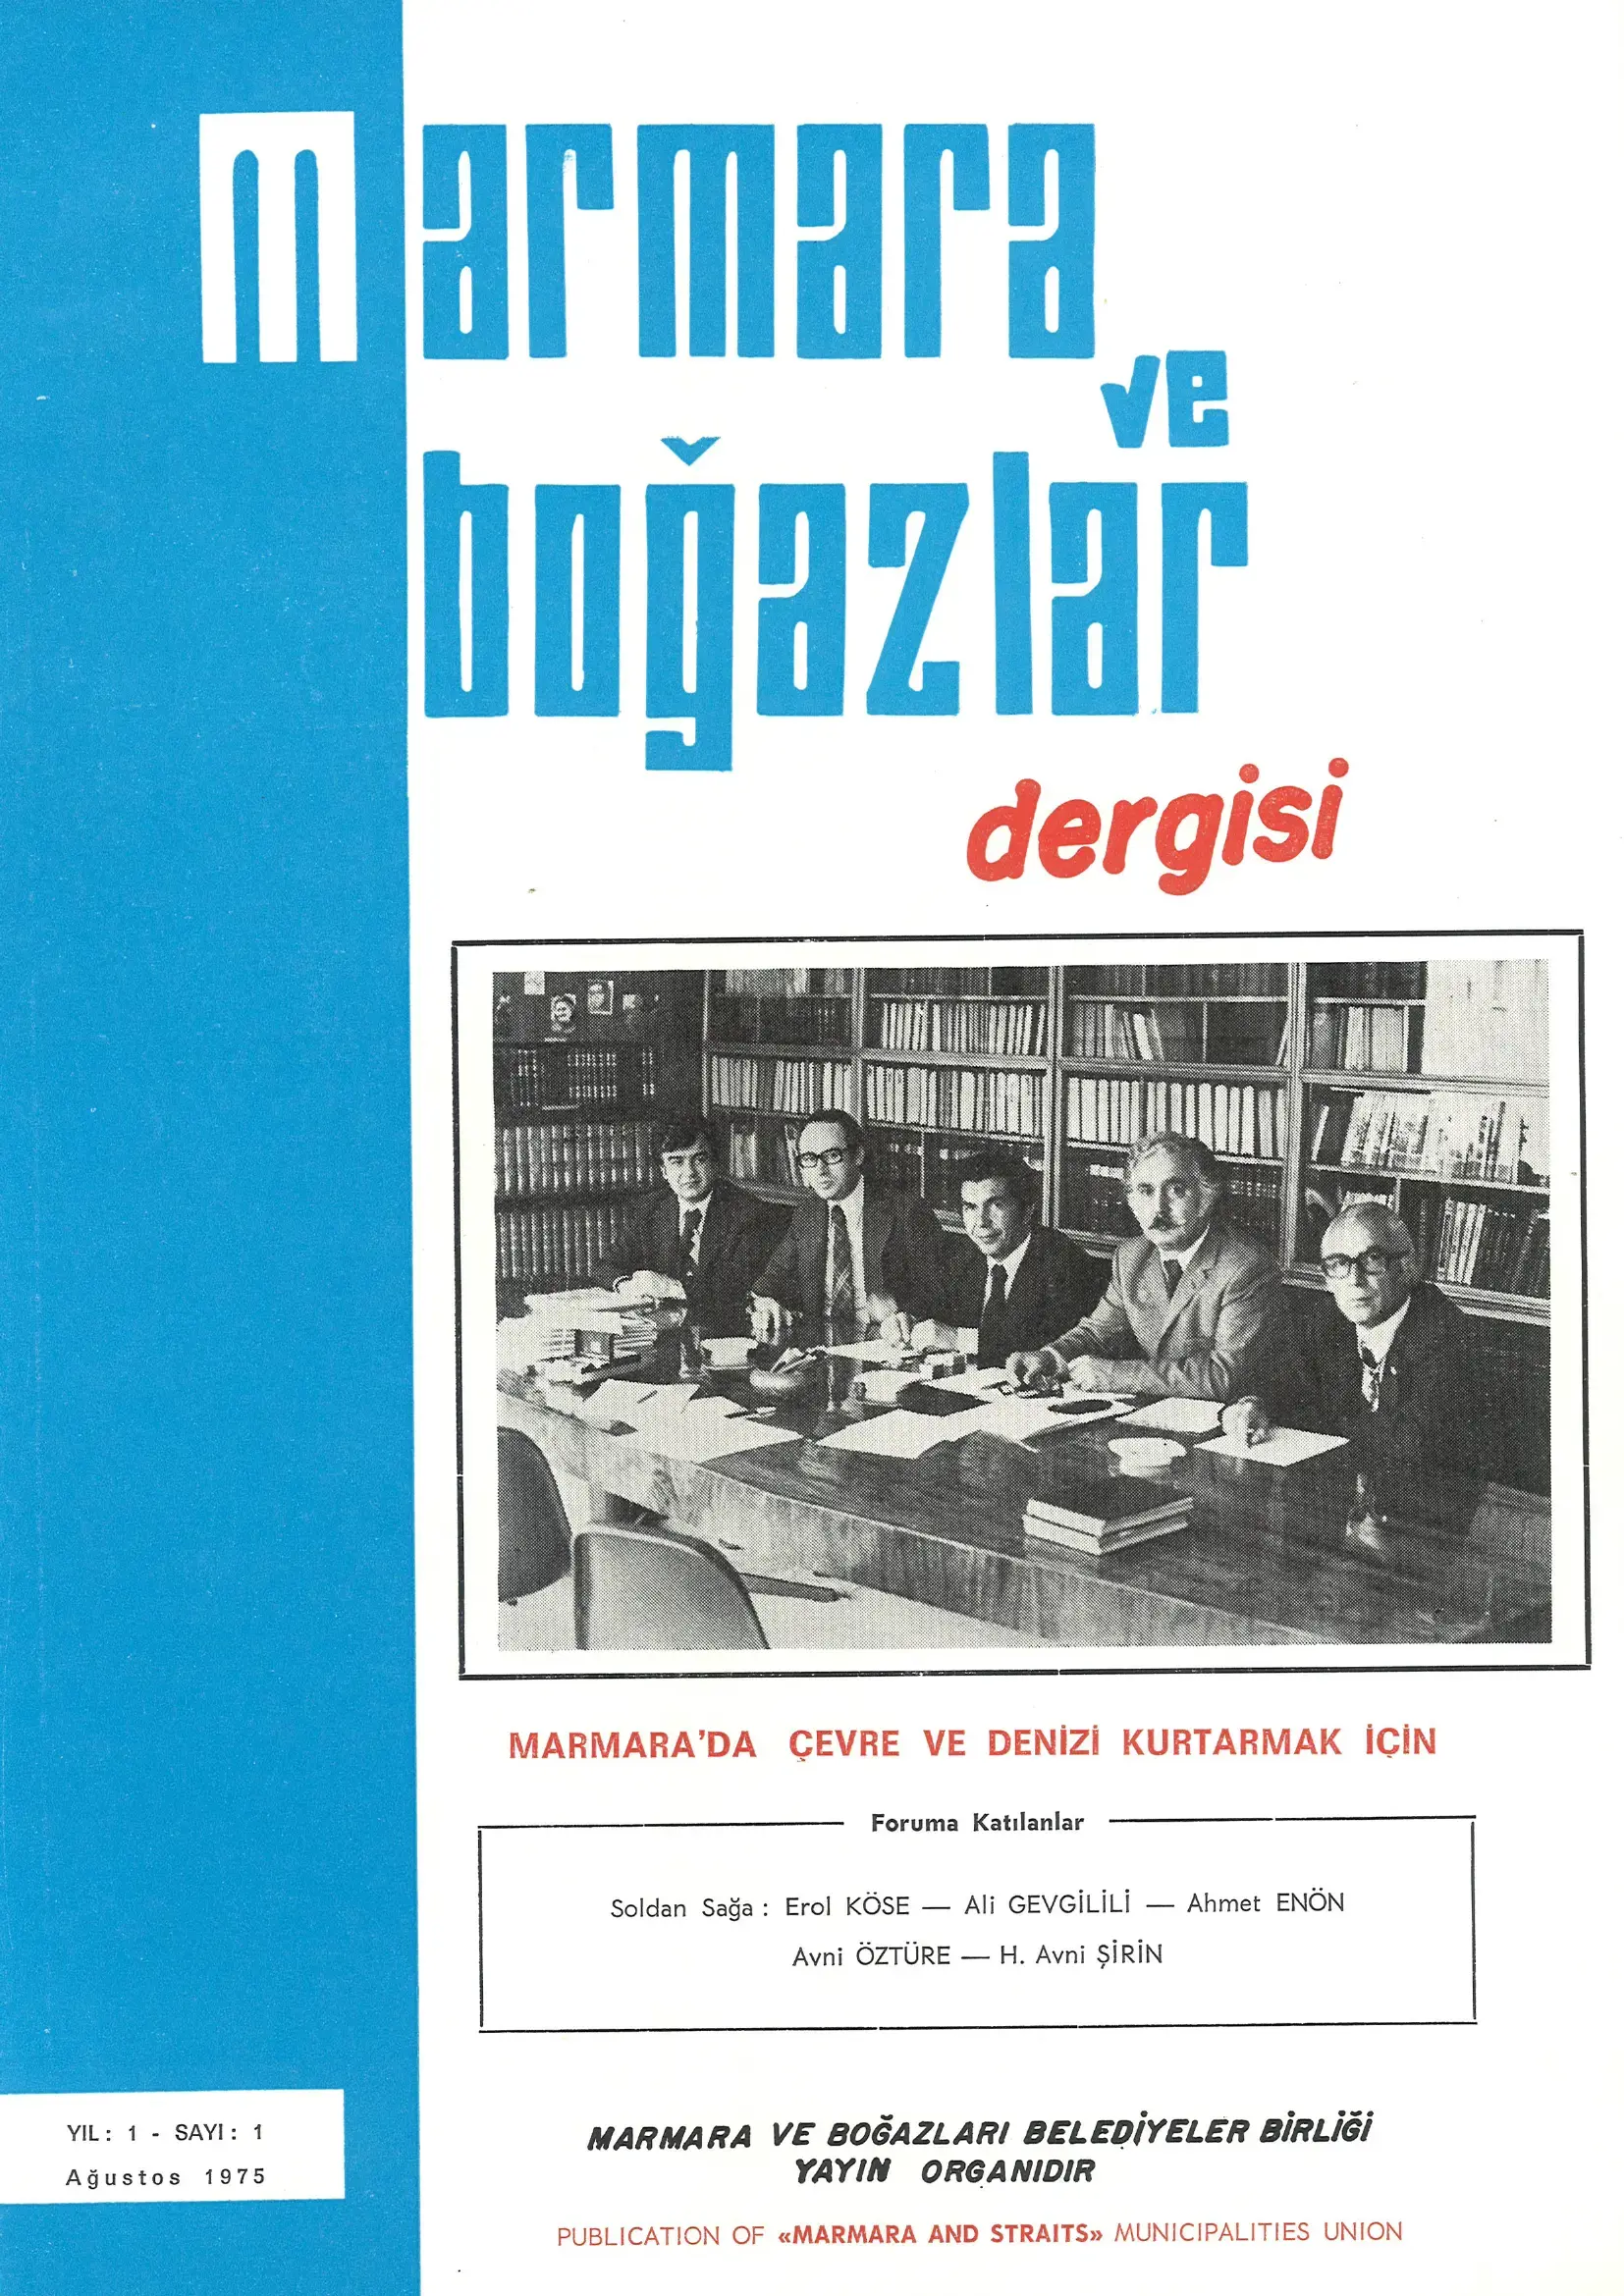 Marmara ve Boğazlar Dergisi - Ağustos 1975
                                    Resmi